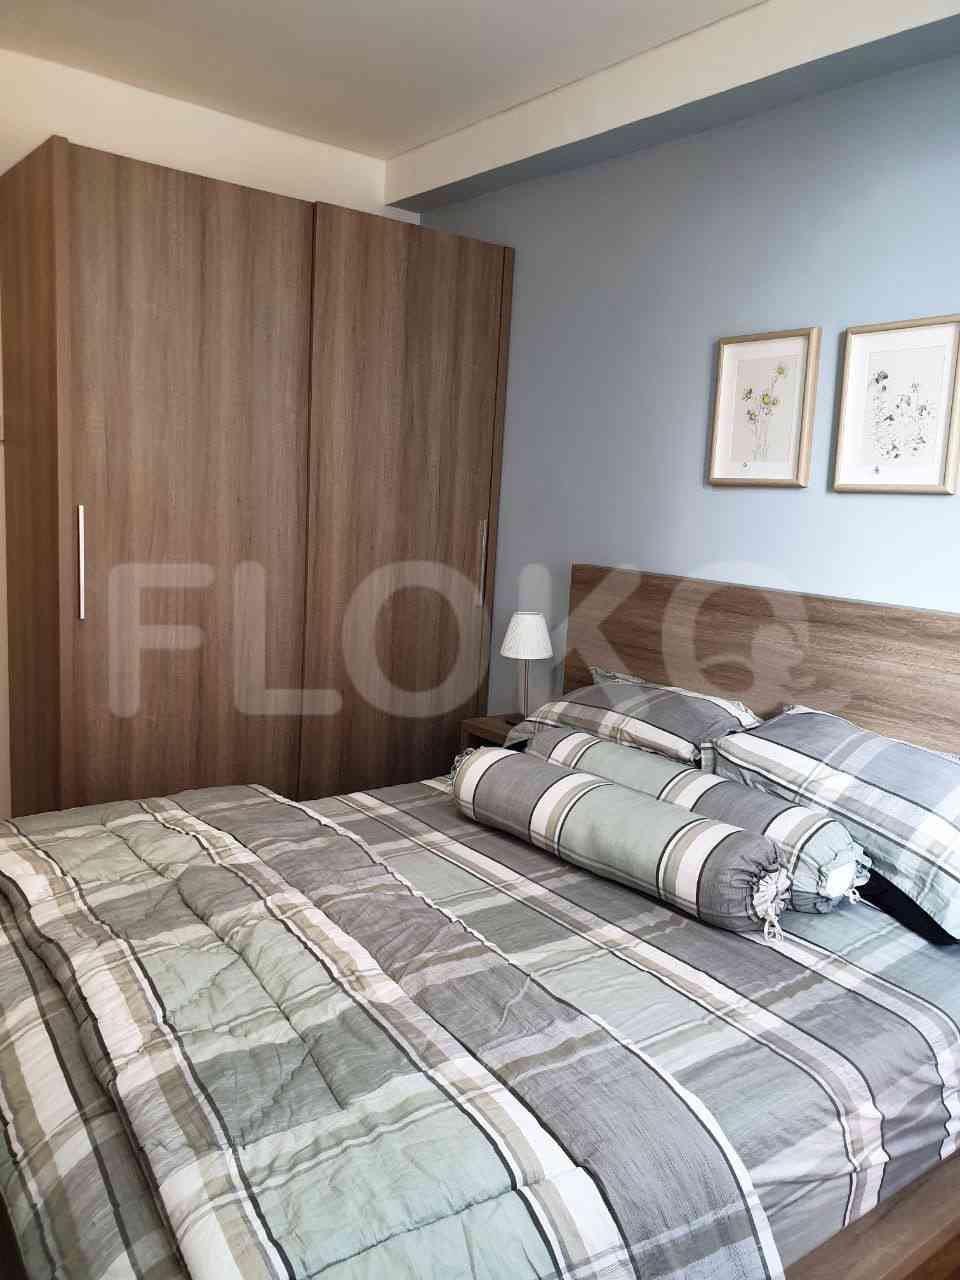 1 Bedroom on 15th Floor for Rent in Pejaten Park Residence - fpe945 4